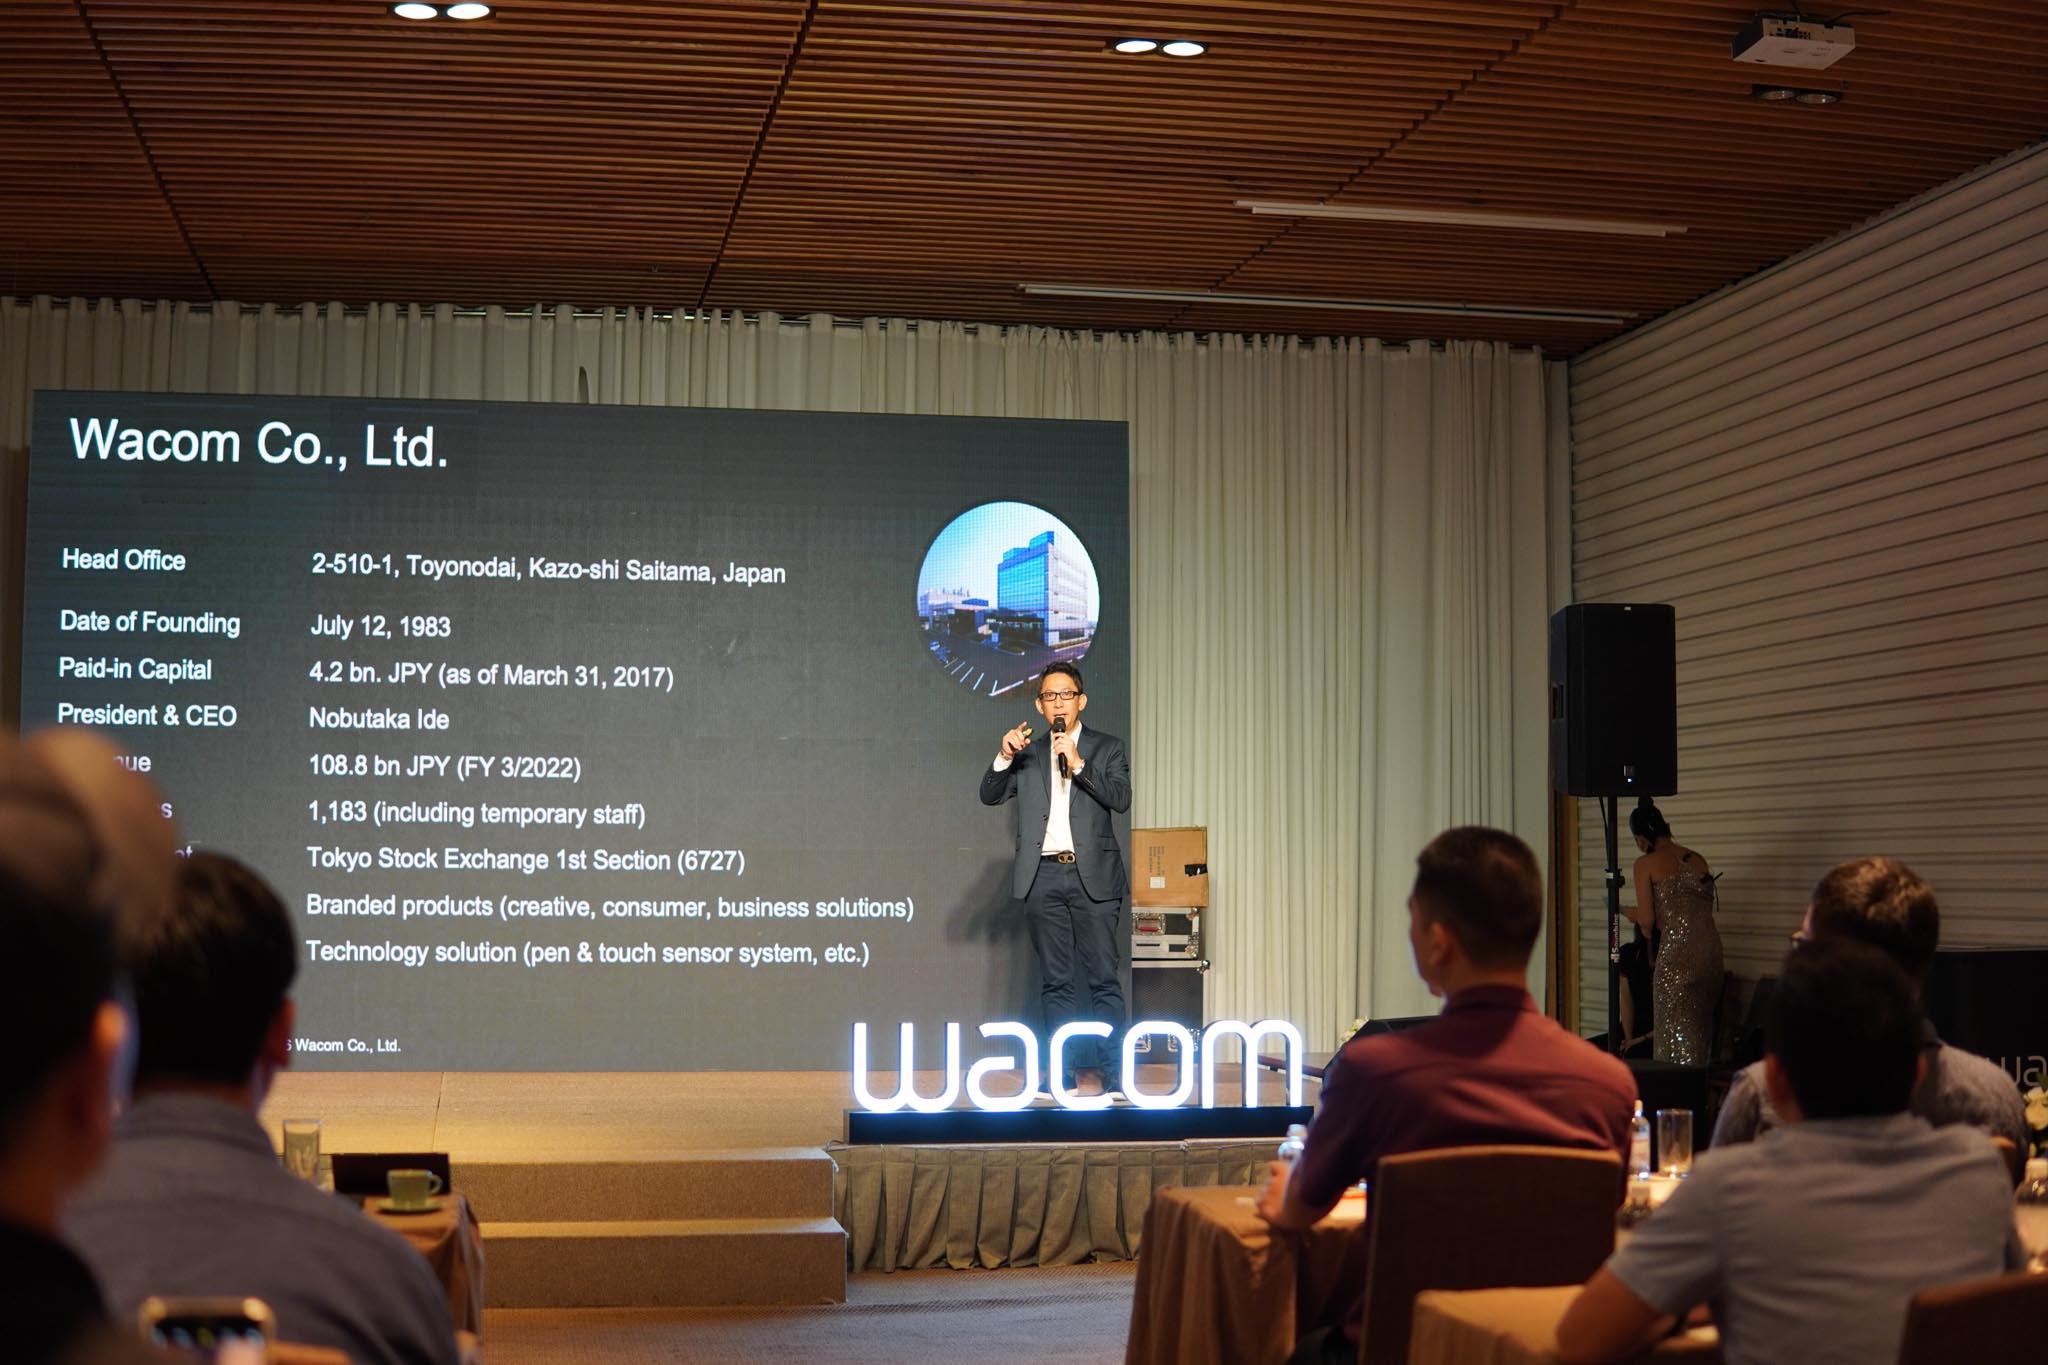 Wacom Cintiq Pro 27 ra mắt tại Việt Nam - Bảng vẽ điện tử dành cho người dùng chuyên nghiệp